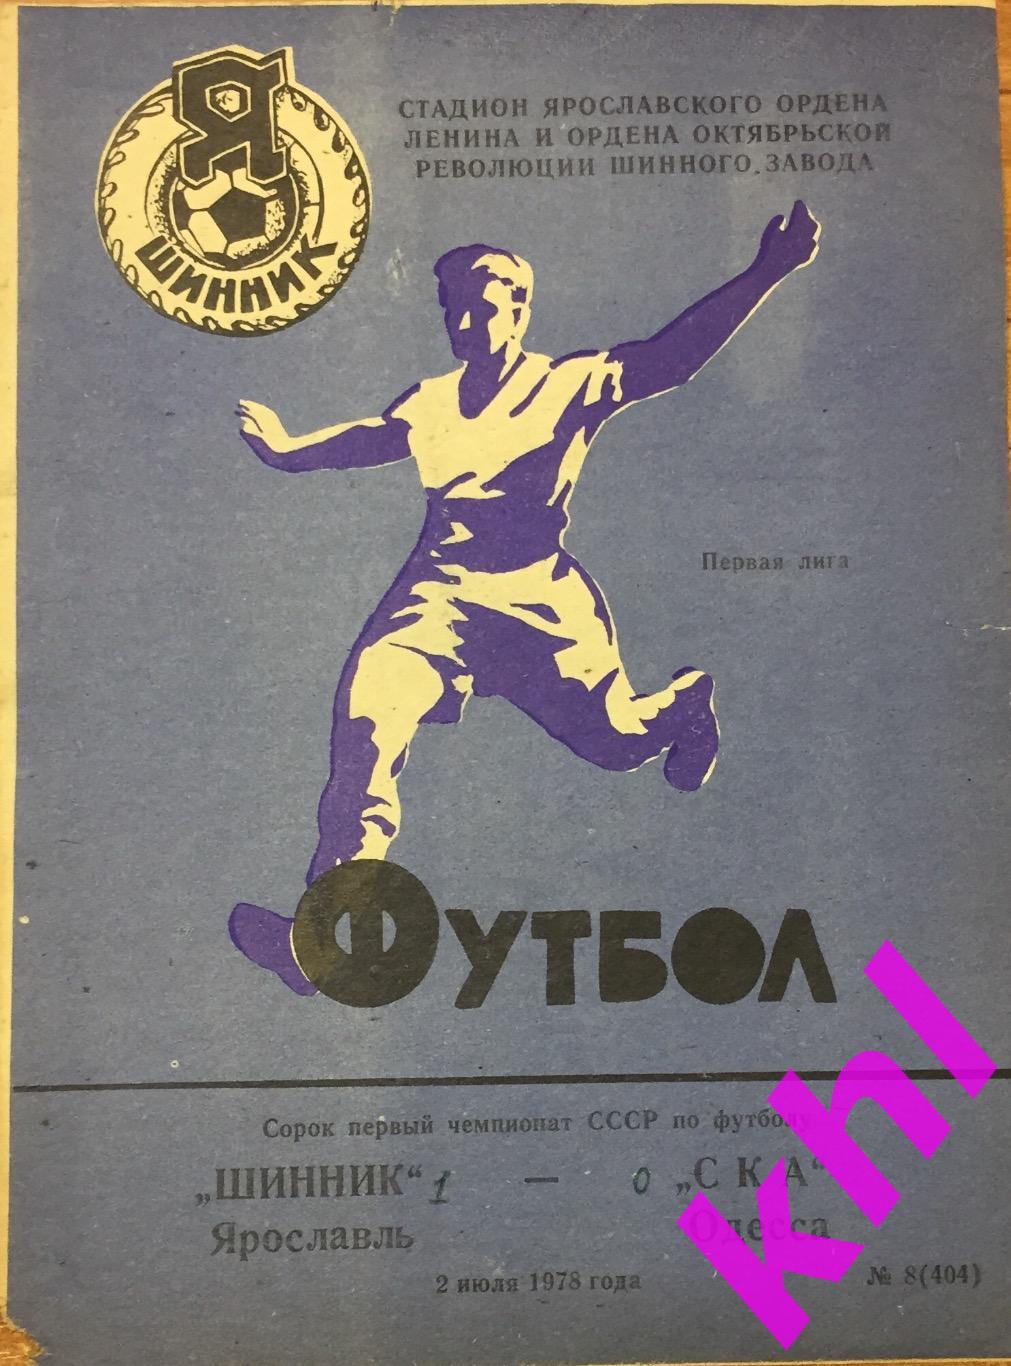 Шинник Ярославль - СКА Одесса 2 июля 1978